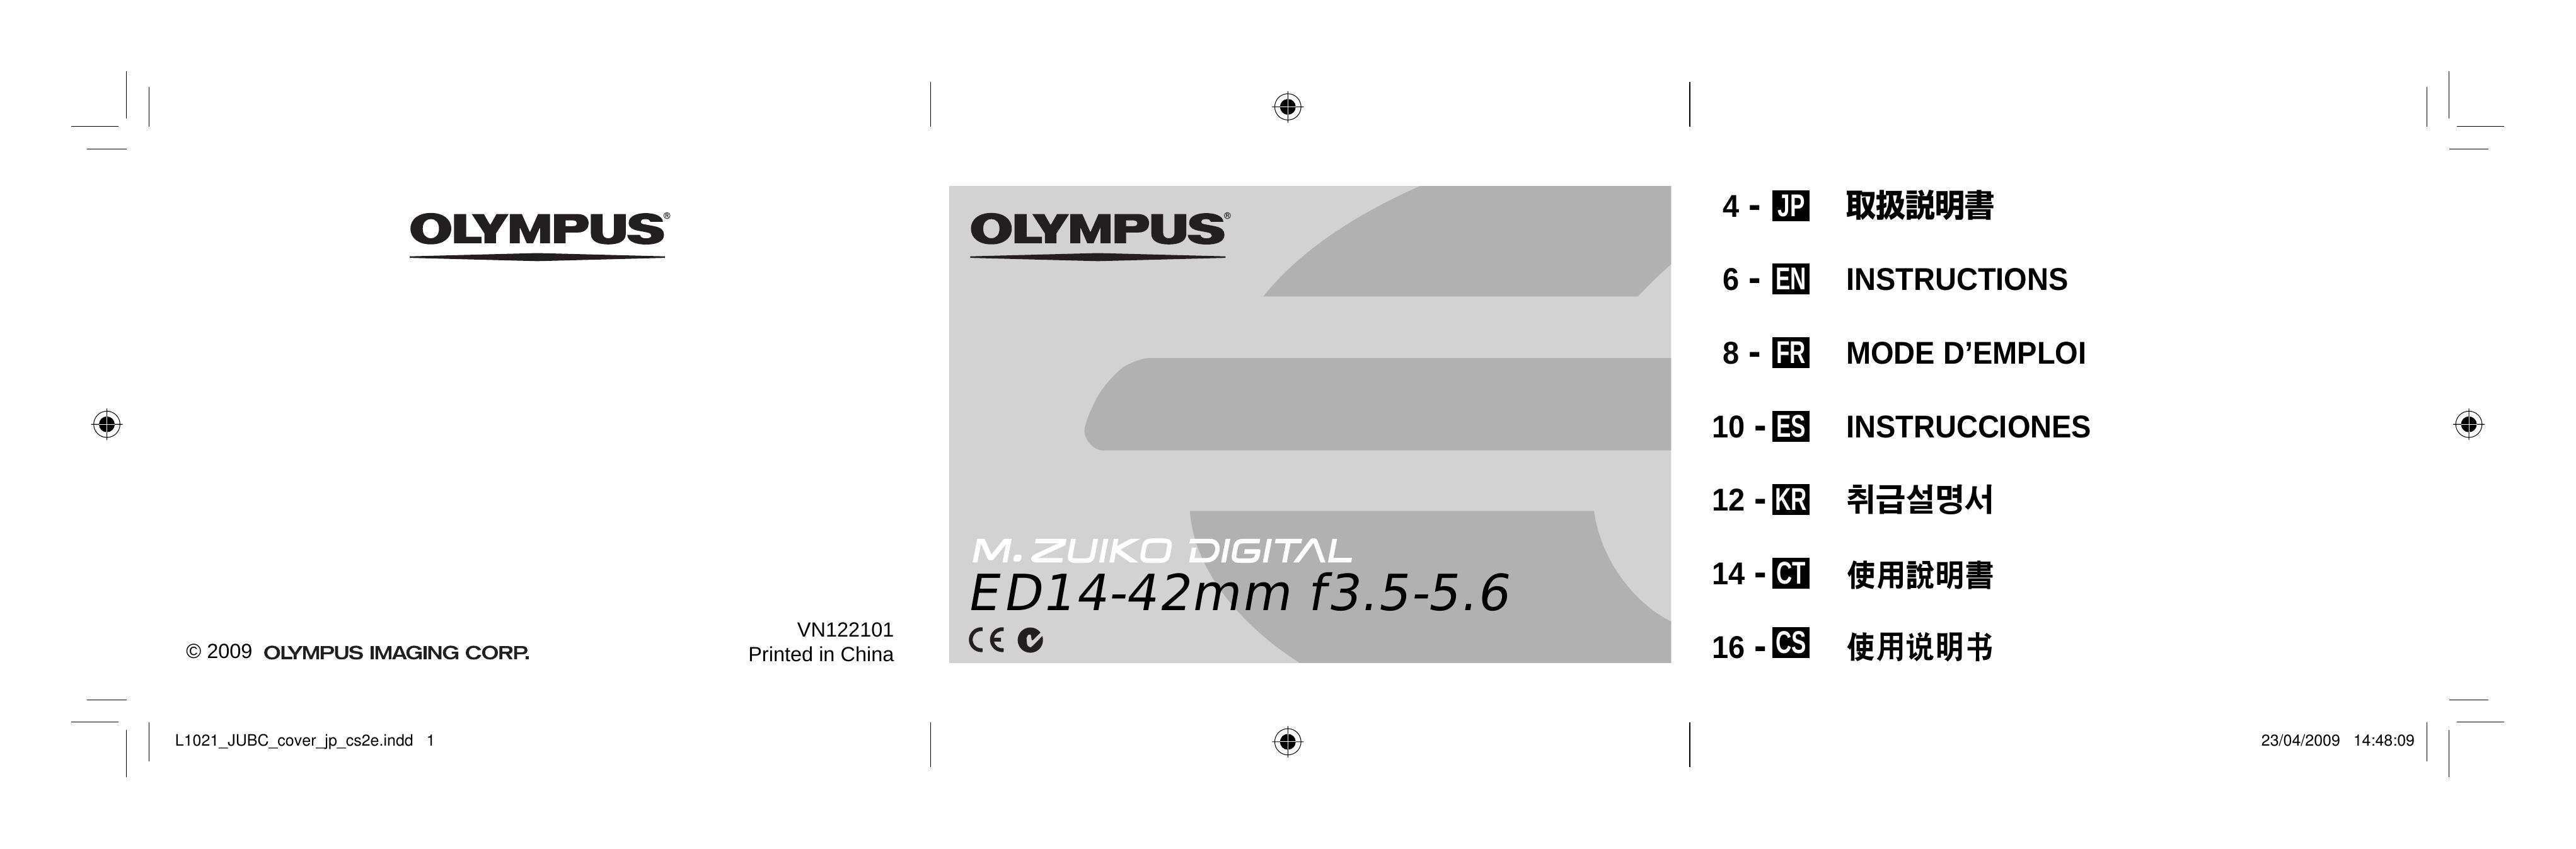 Olympus 261055 Camera Lens User Manual